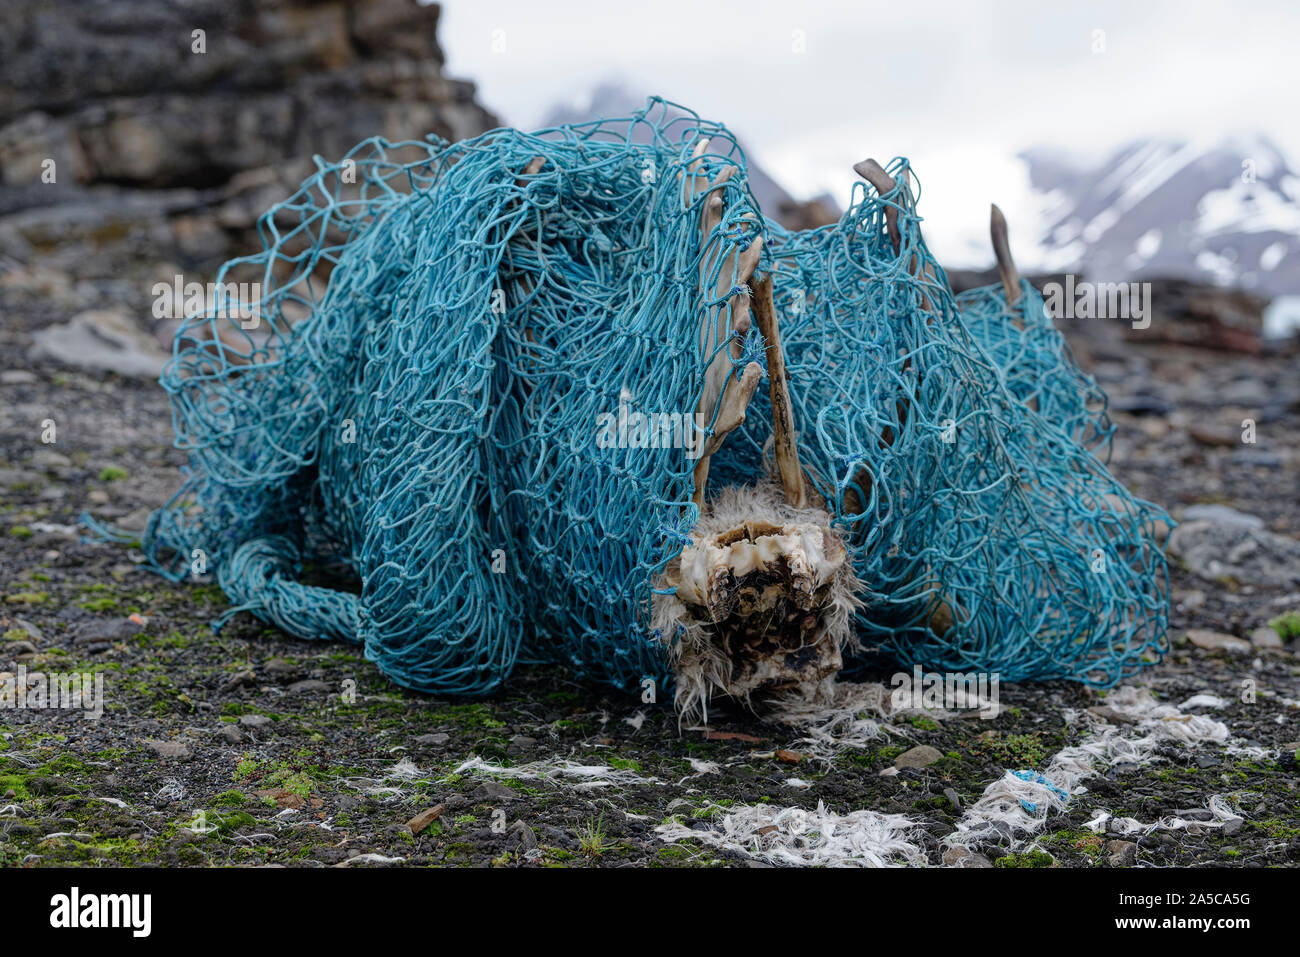 Cráneo del Svalbard los renos (Rangifer tarandus platyrhynchus) en una red de pescador. El animal se enredó en la red y luego murió. Hornsund, Svalbard Foto de stock